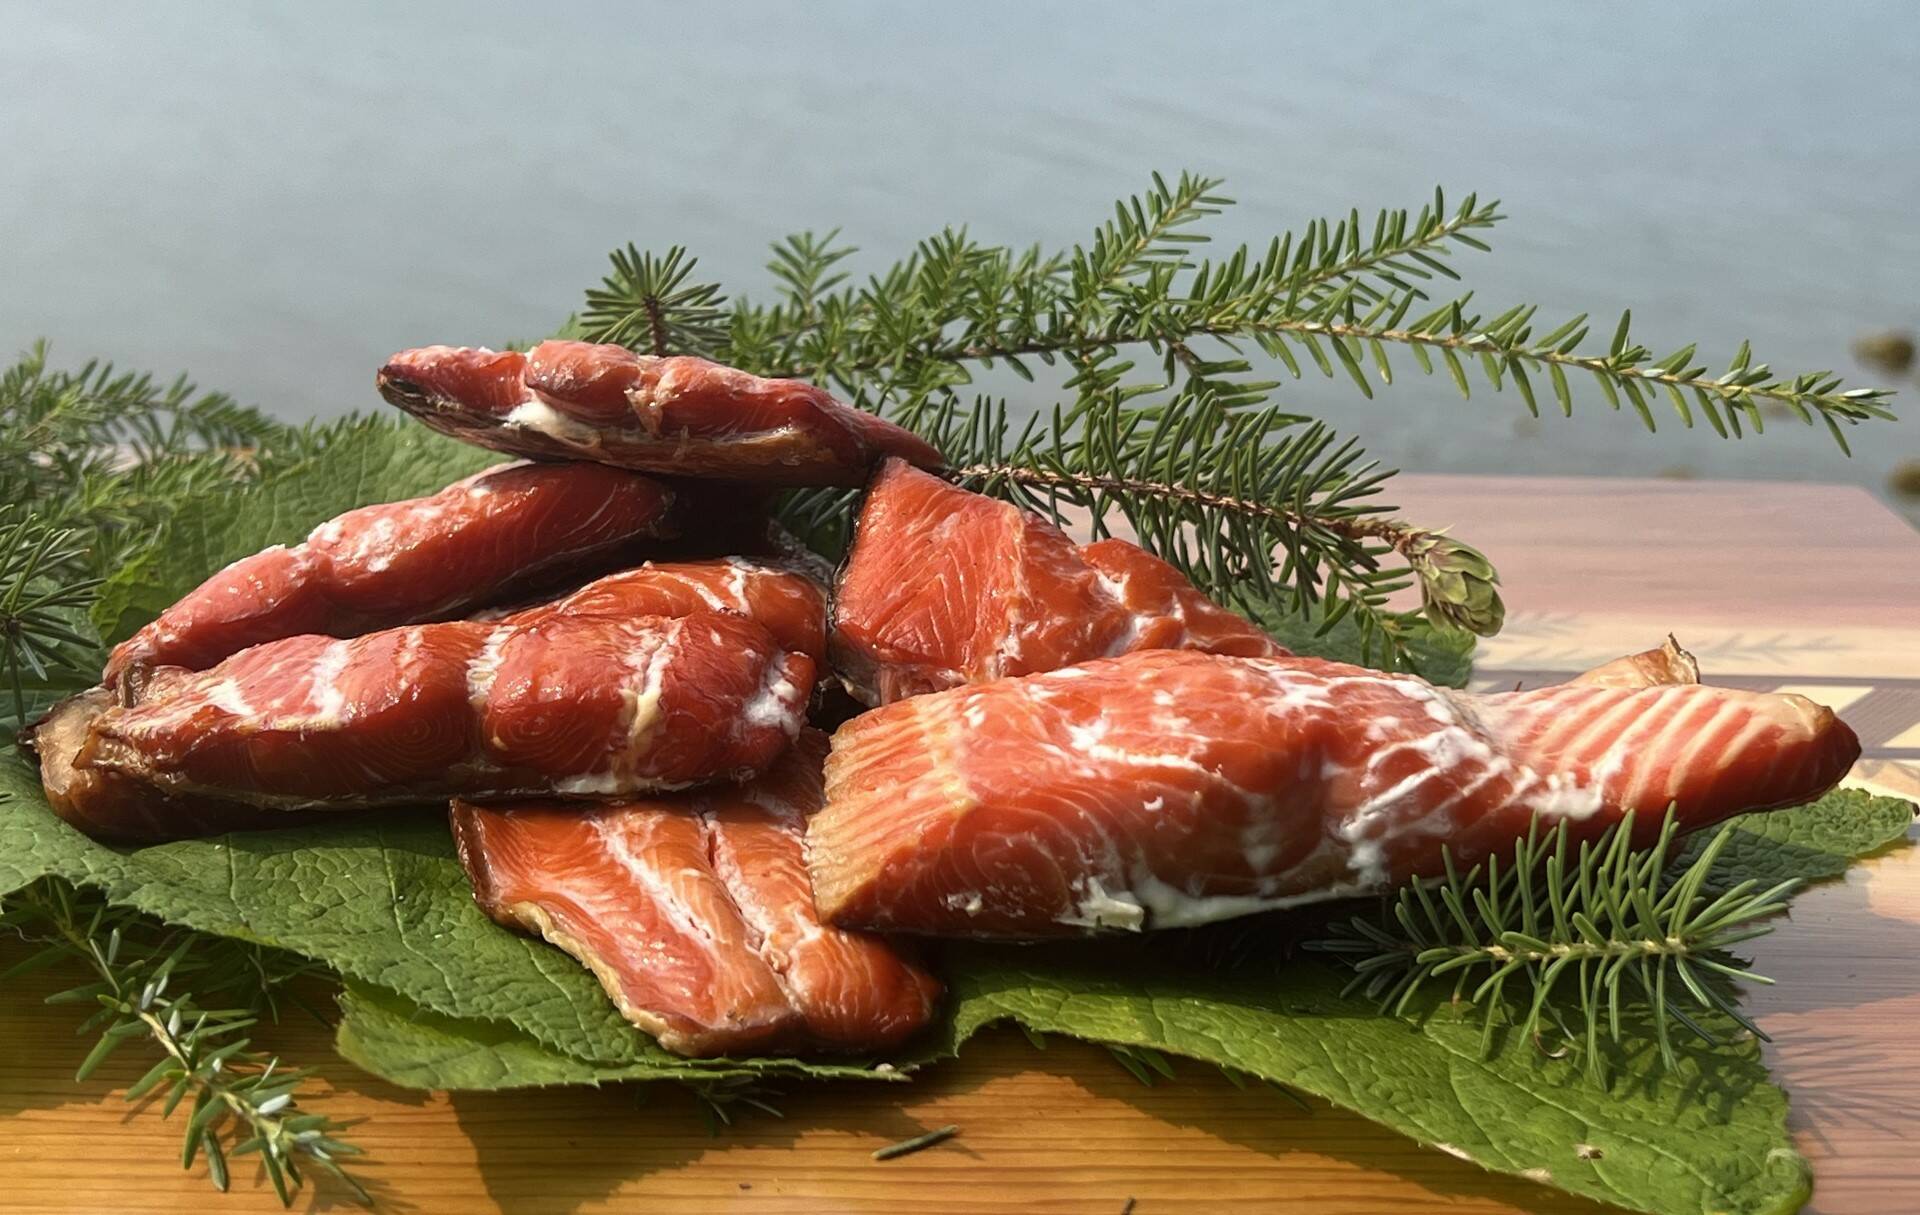 Smoked salmon ready for taste testing in Wrangell. (Photo by Vivian Faith Prescott)